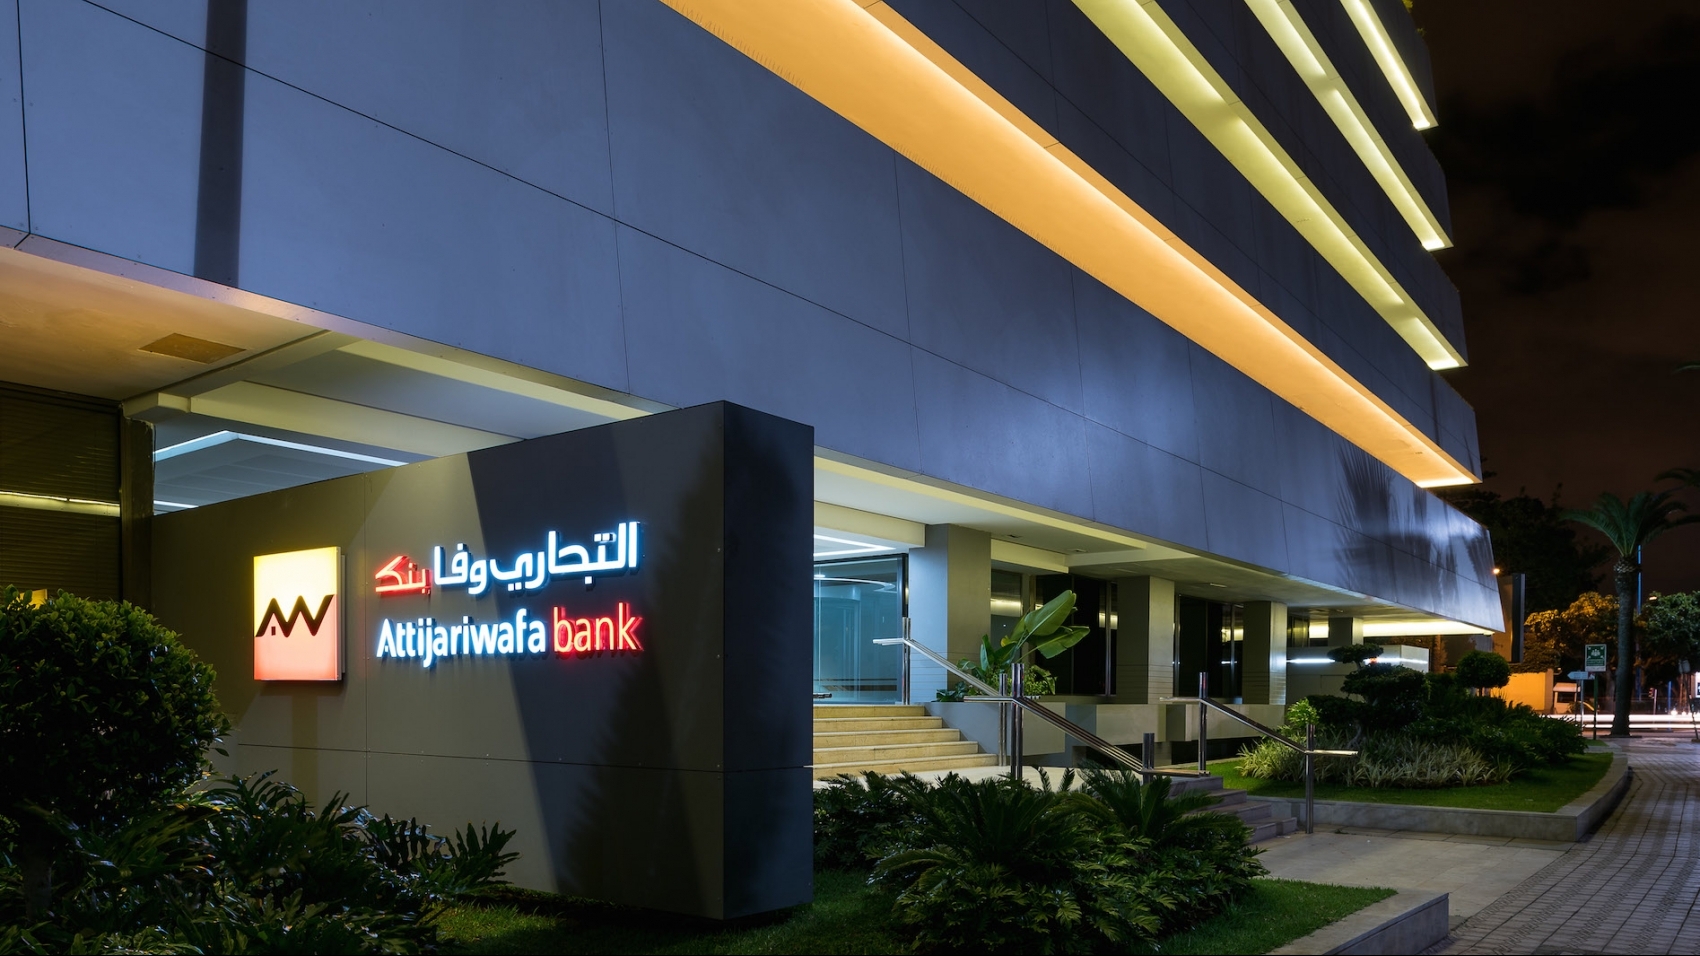 Attijariwafa bank élue «Meilleure banque au Maroc en 2021» par Euromoney